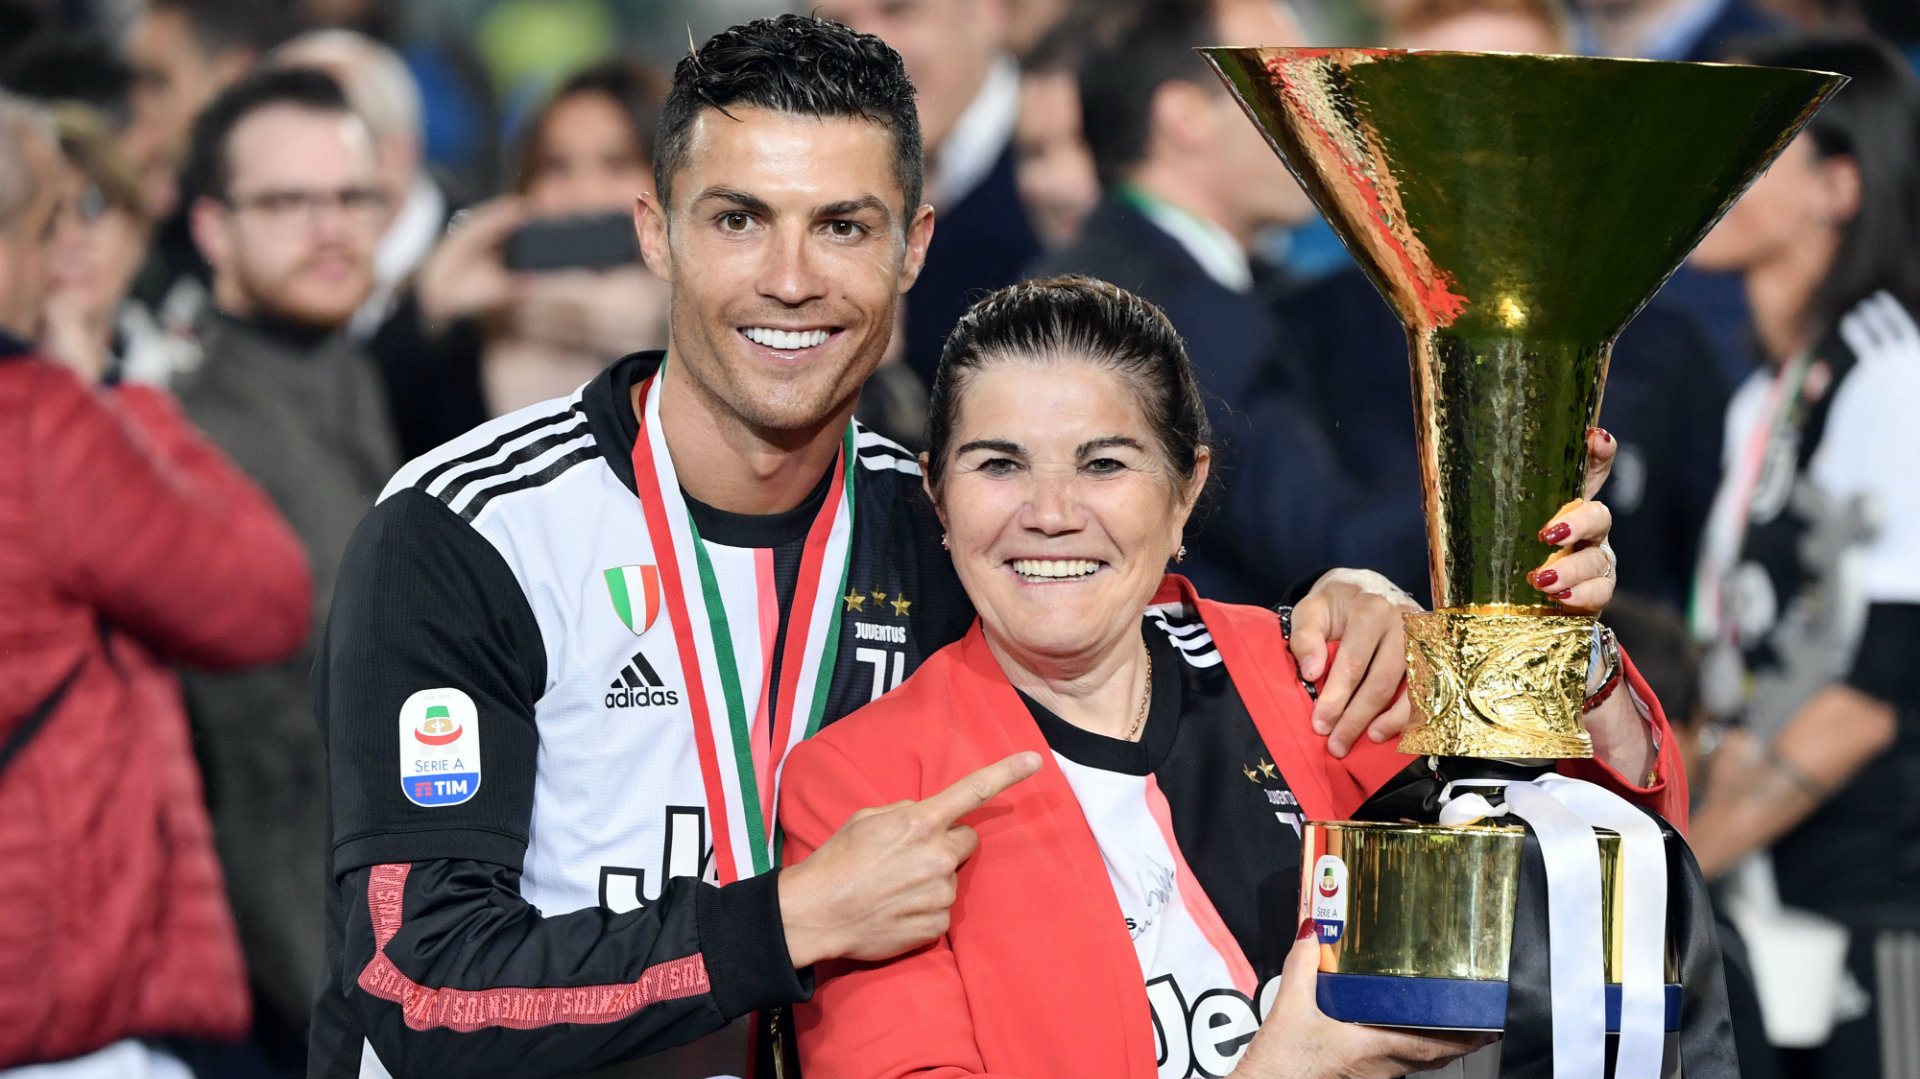 Ronaldo cùng bạn gái vội vã trở về khi nghe tin mẹ đột quỵ, đưa ra cập nhật mới nhất khiến dân tình an lòng - Ảnh 4.